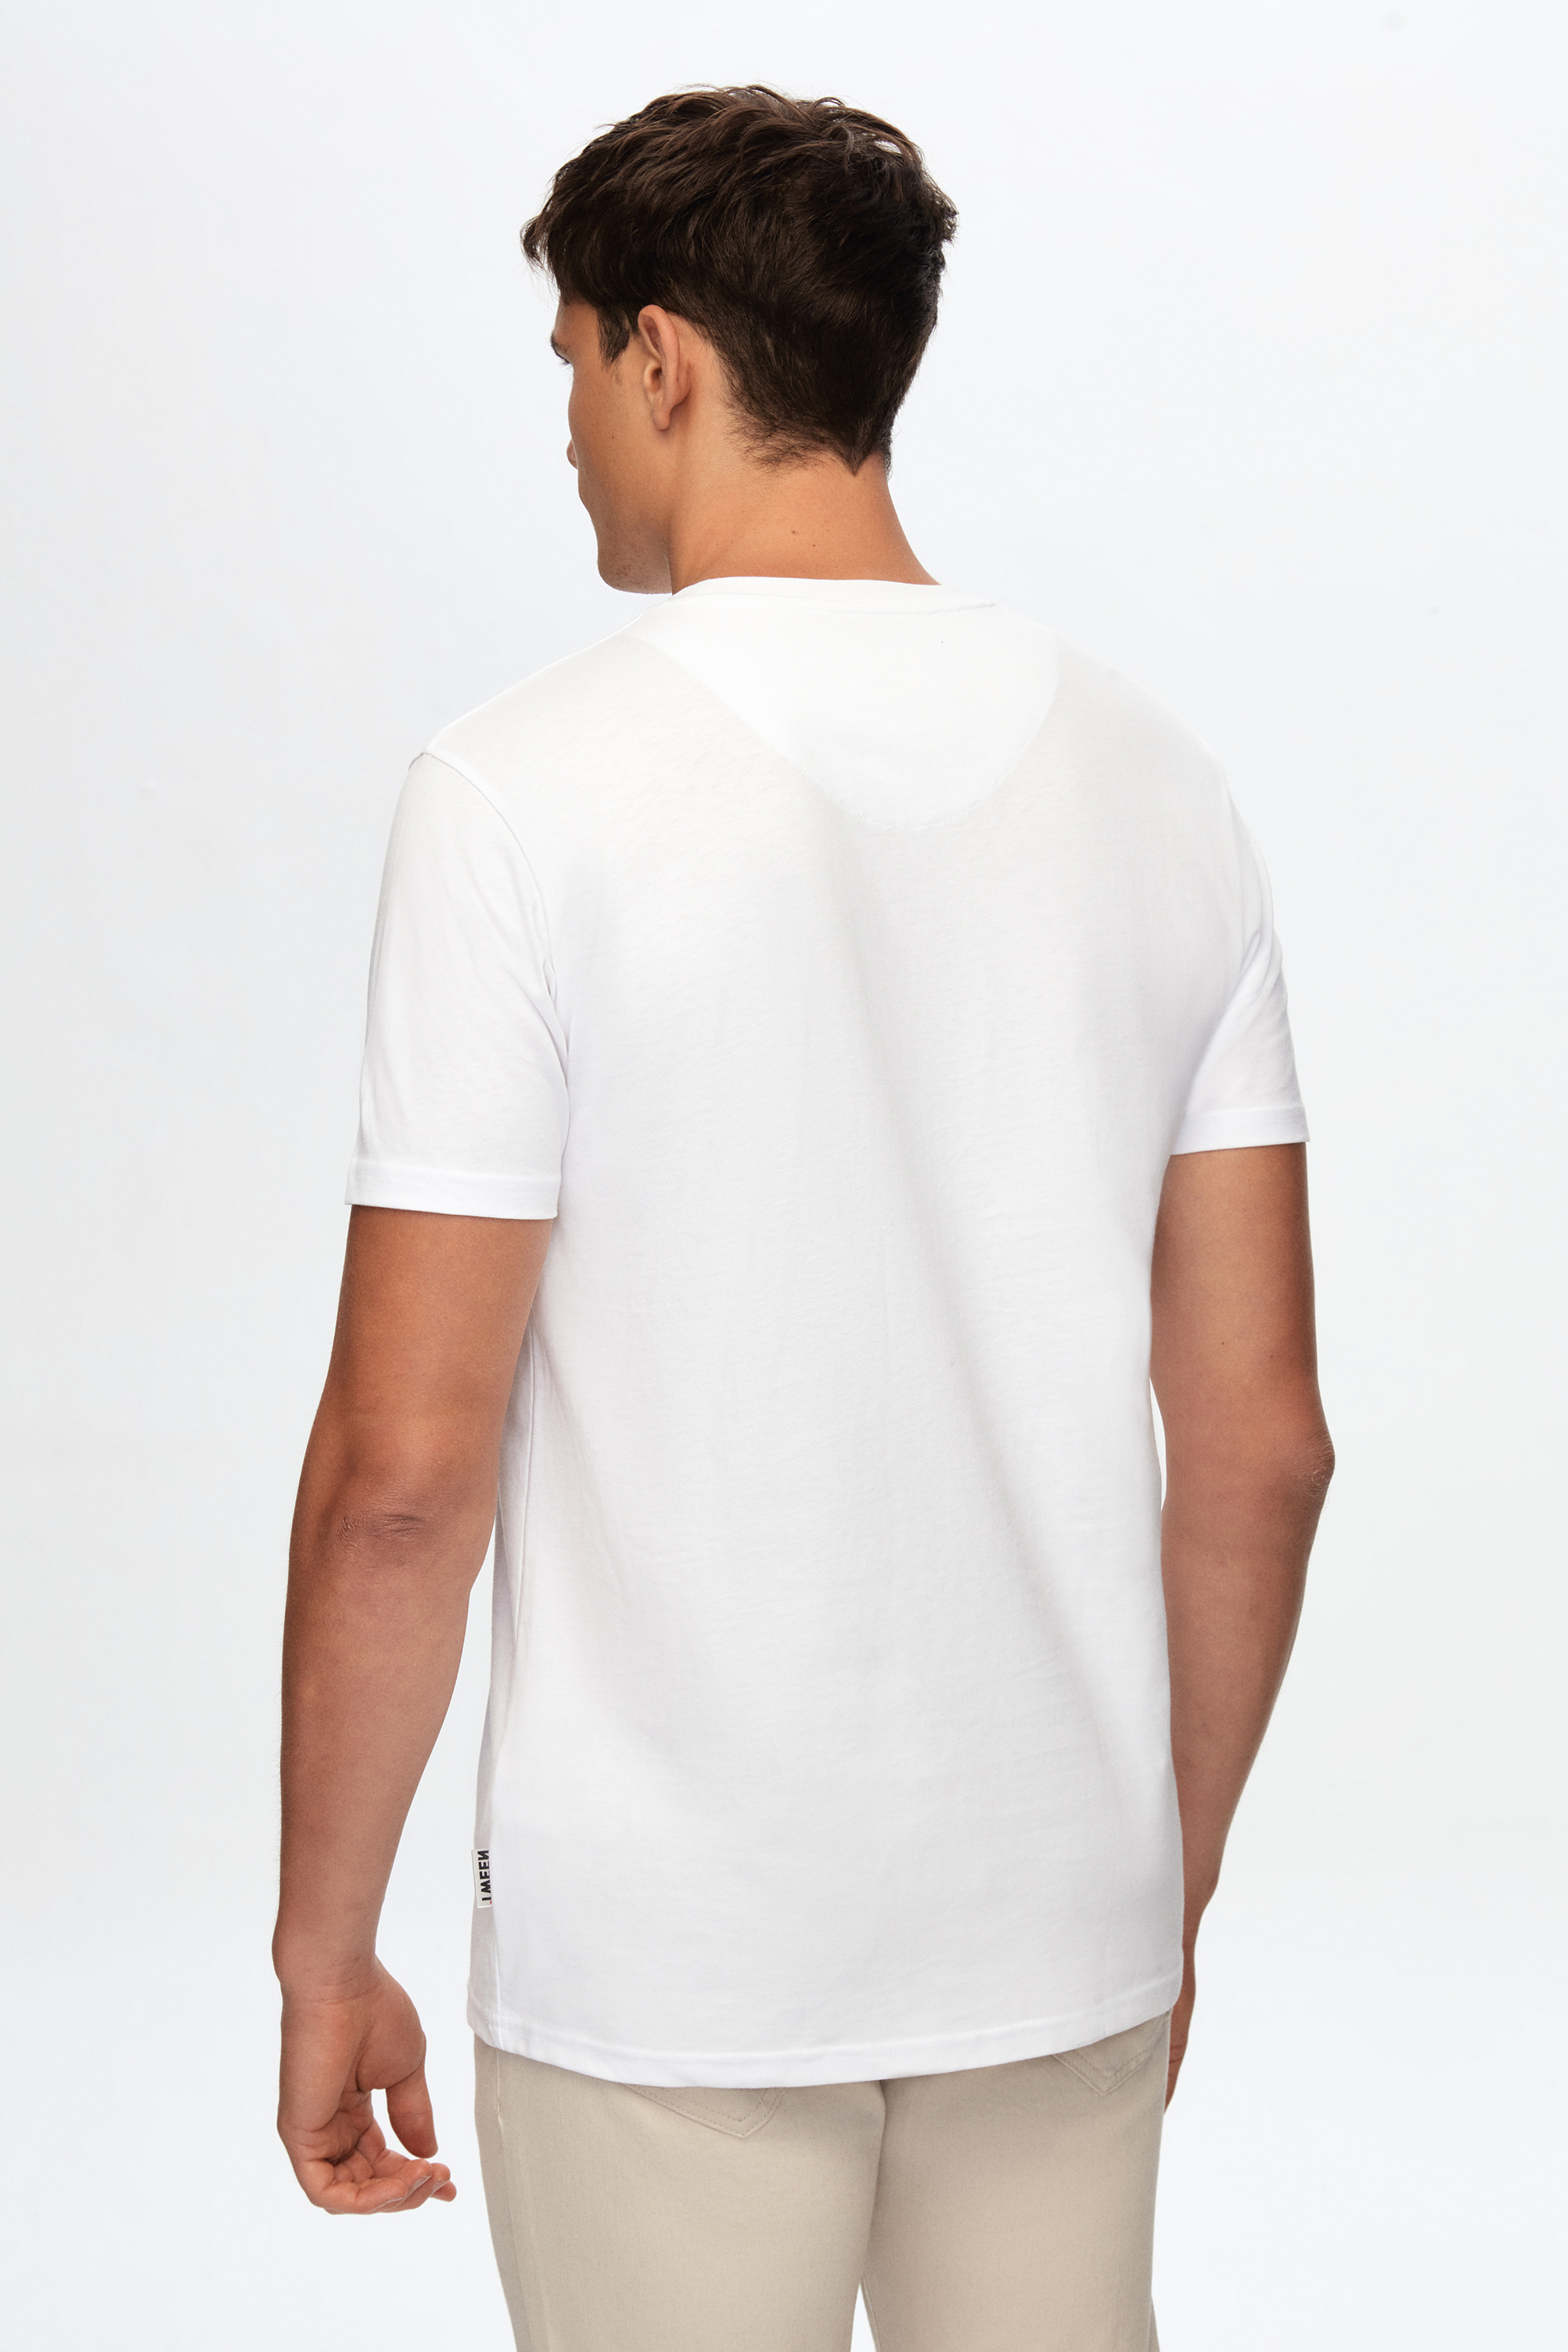 Damat Tween Tween Beyaz T-shirt. 4